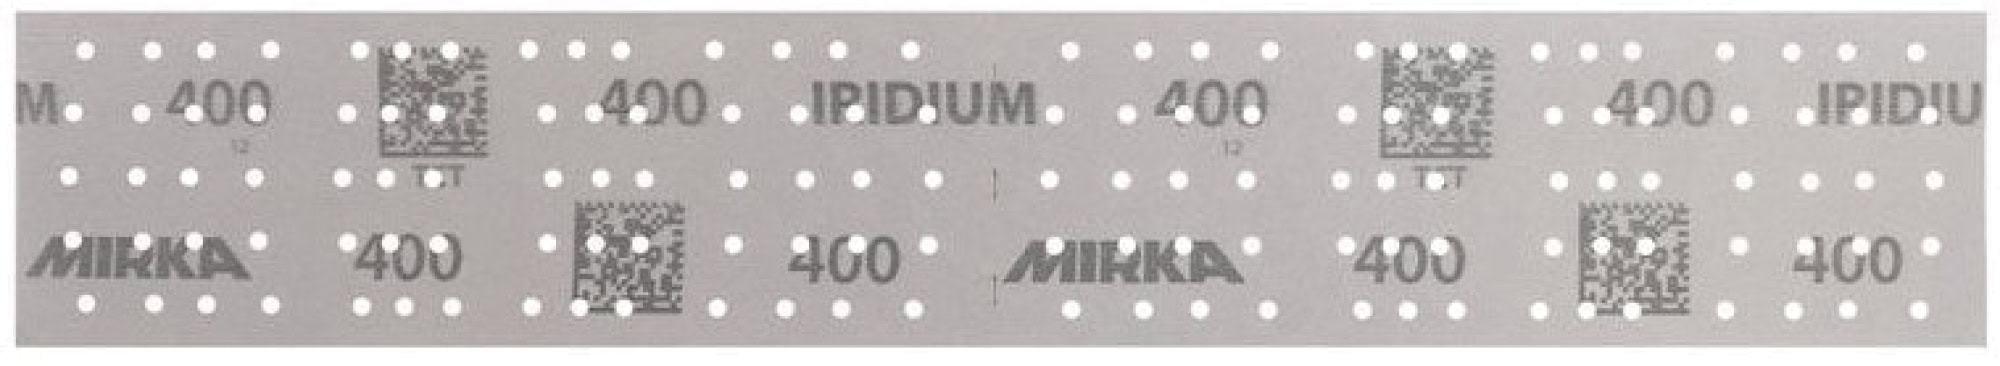 Mirka® Iridium® 246B205015, 70 mm x 400 mm, 2 mal in 70 x 198 mm Stücke perforiert, P150, Multilochung, Kletthaftend, Schleifstreifen mit Keramik- und Aluminiumkorn